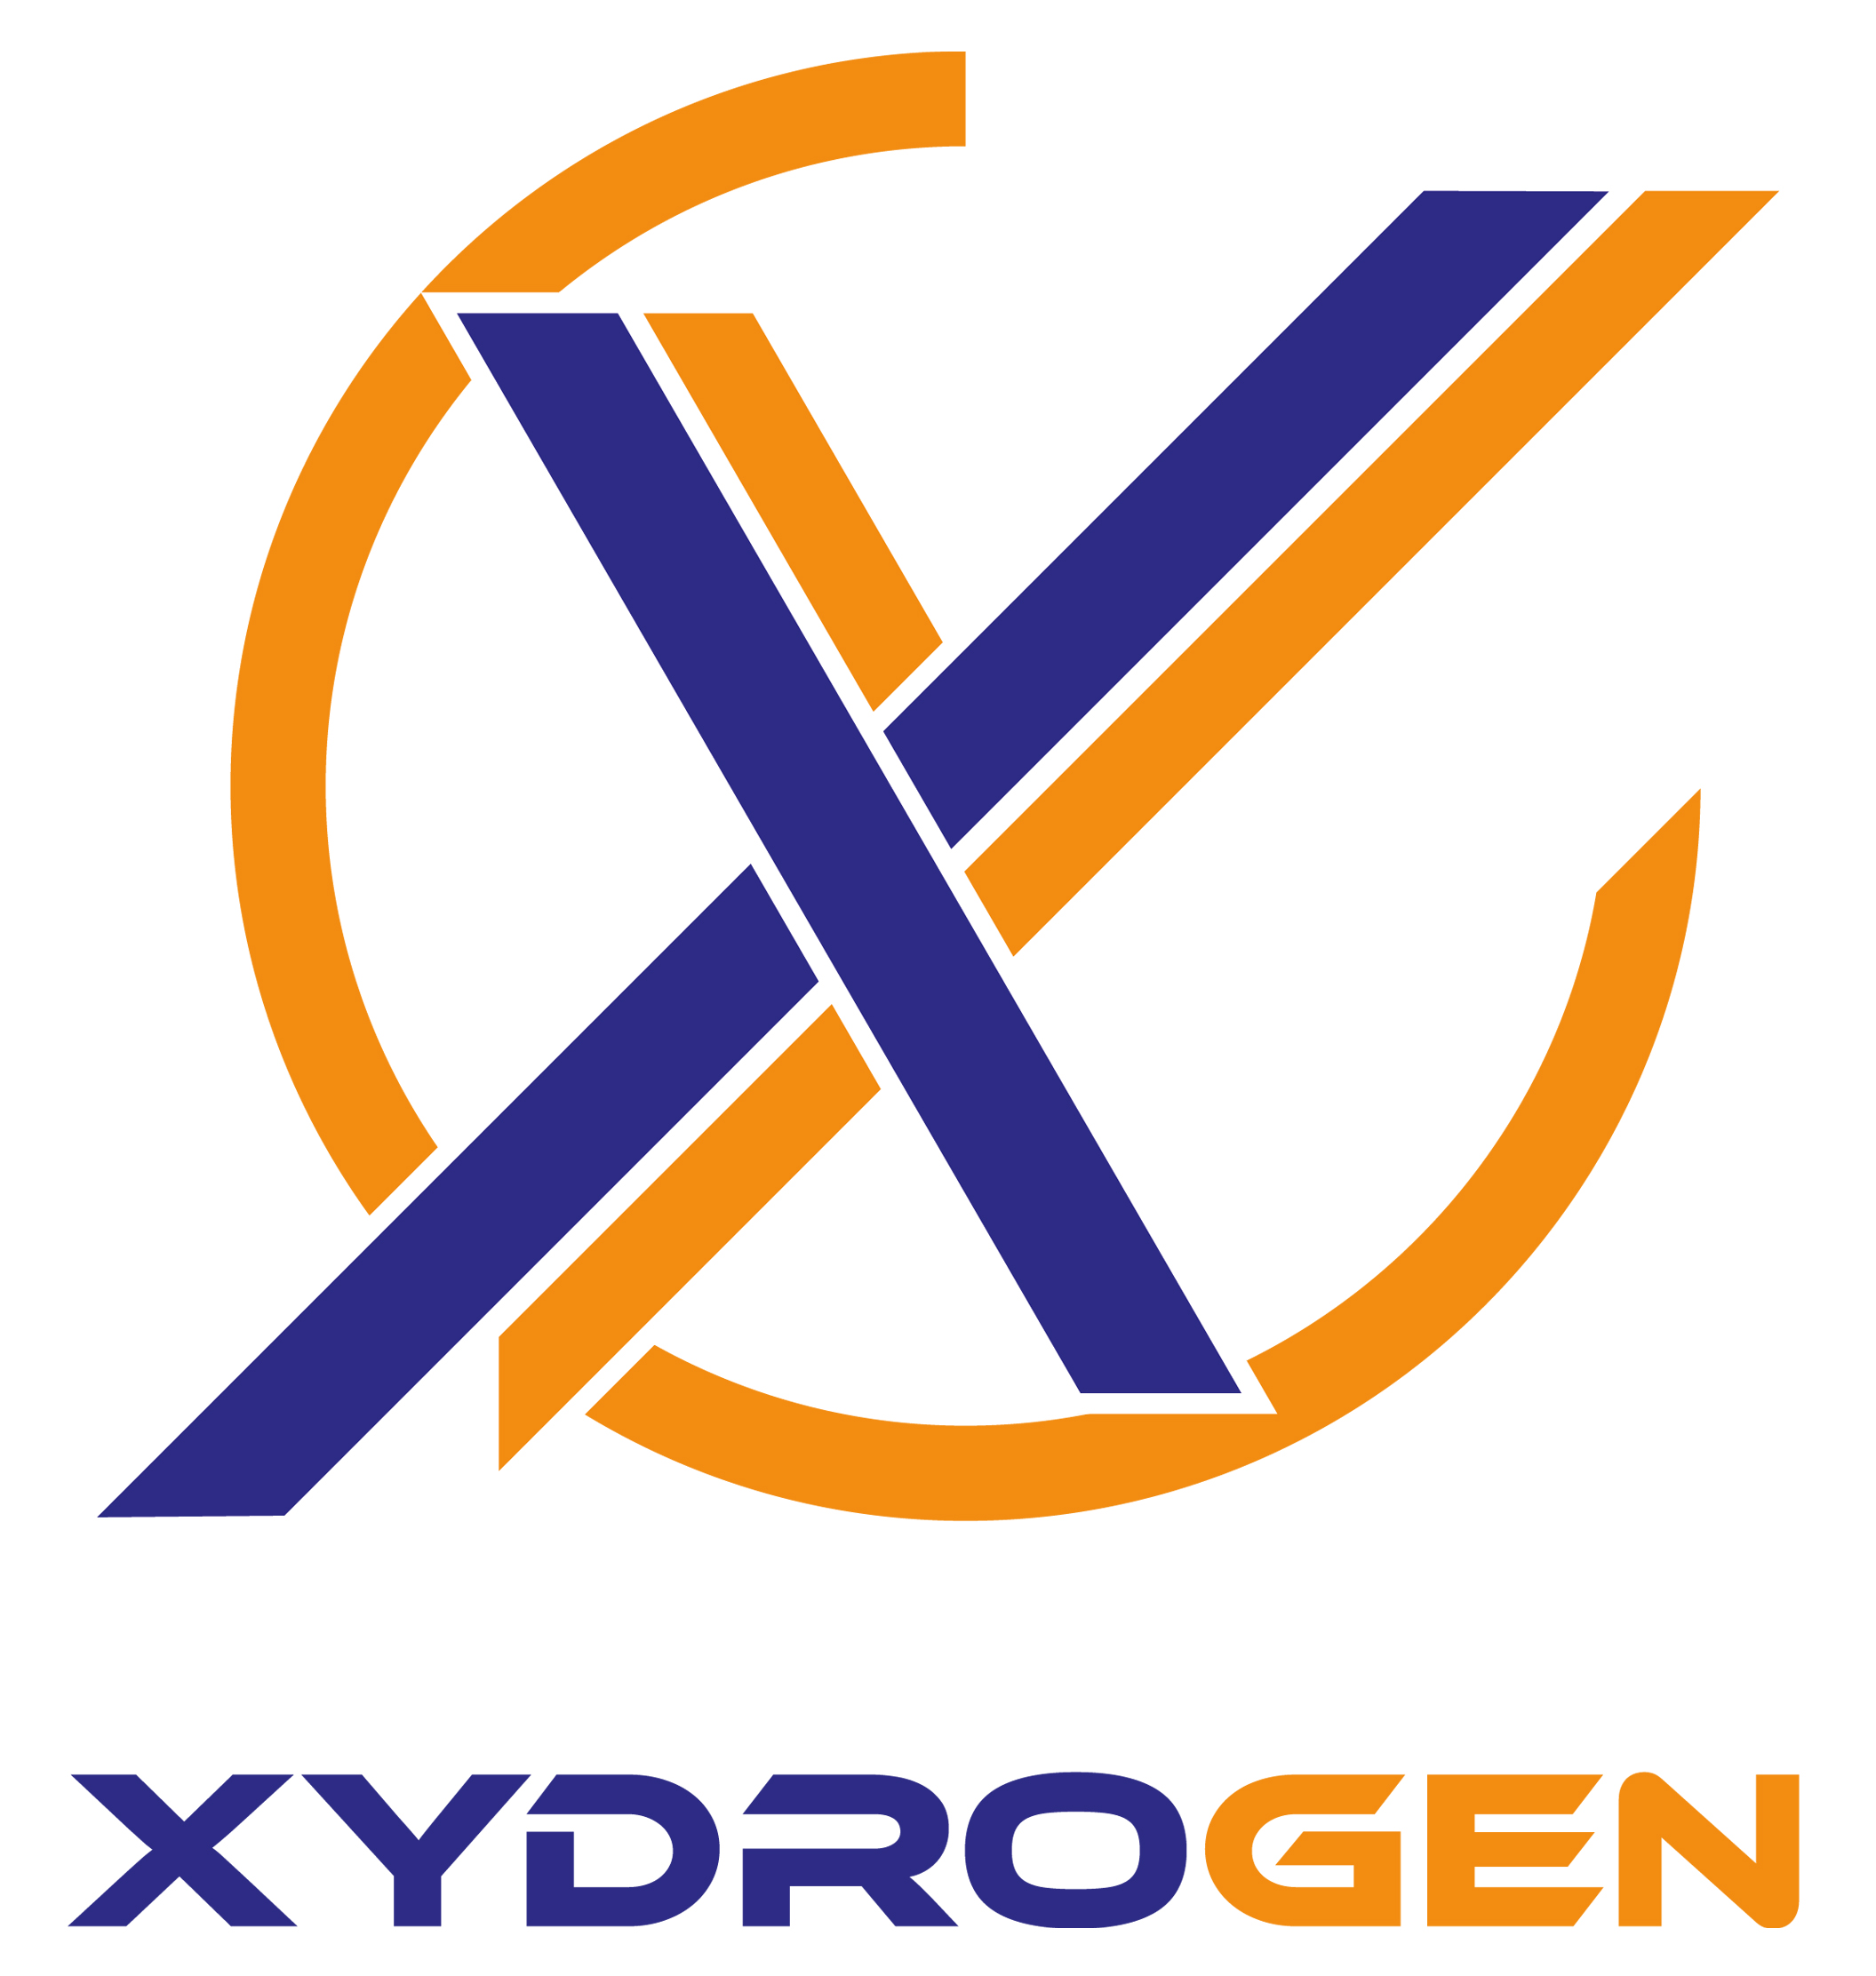 Linked logo for XYDROGEN